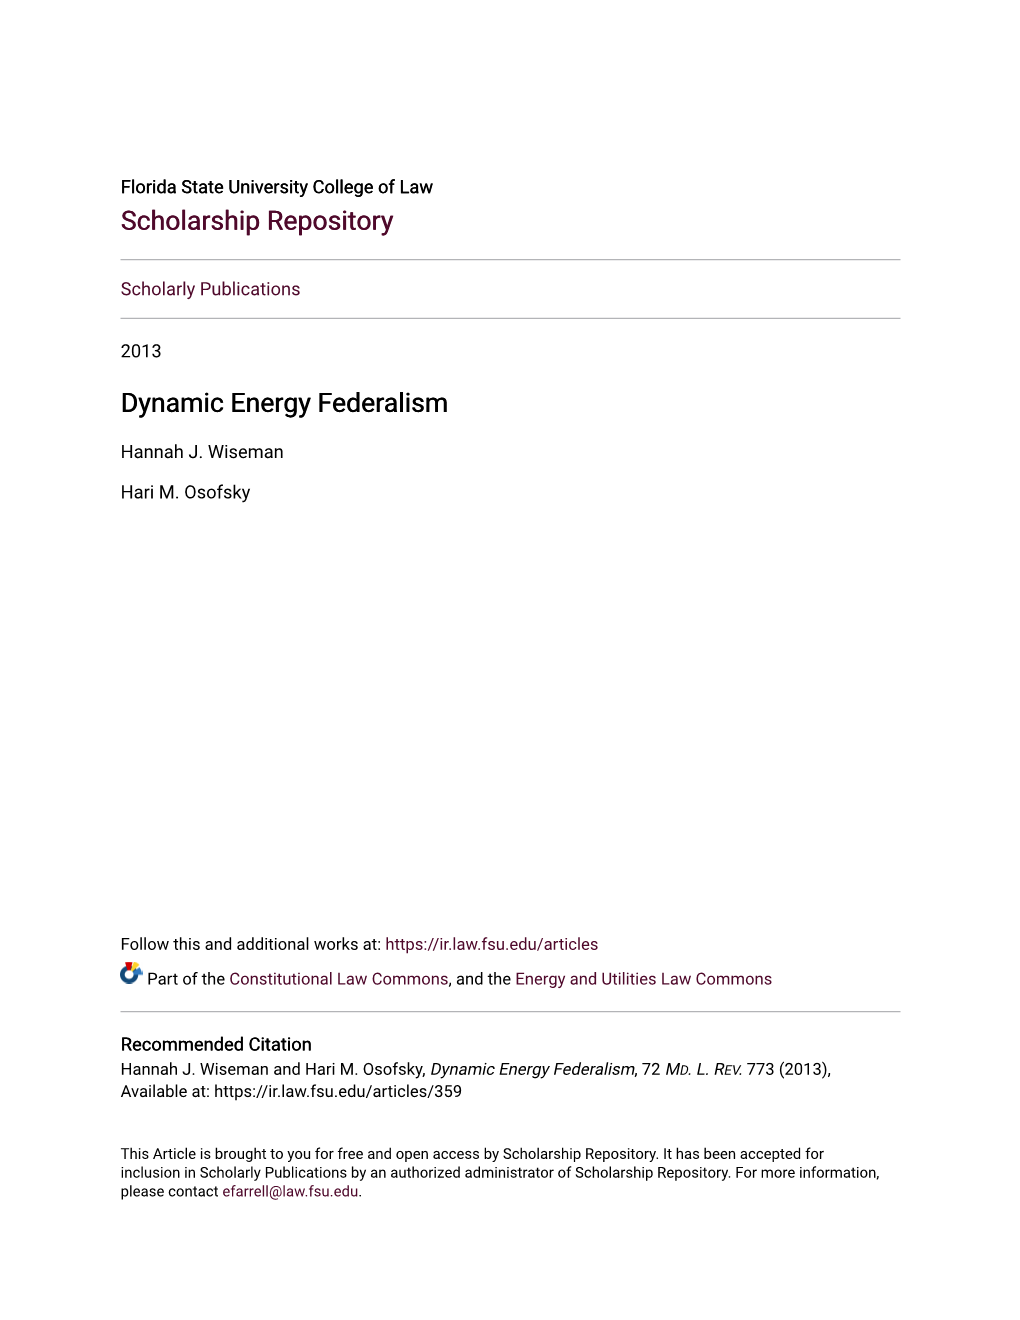 Dynamic Energy Federalism